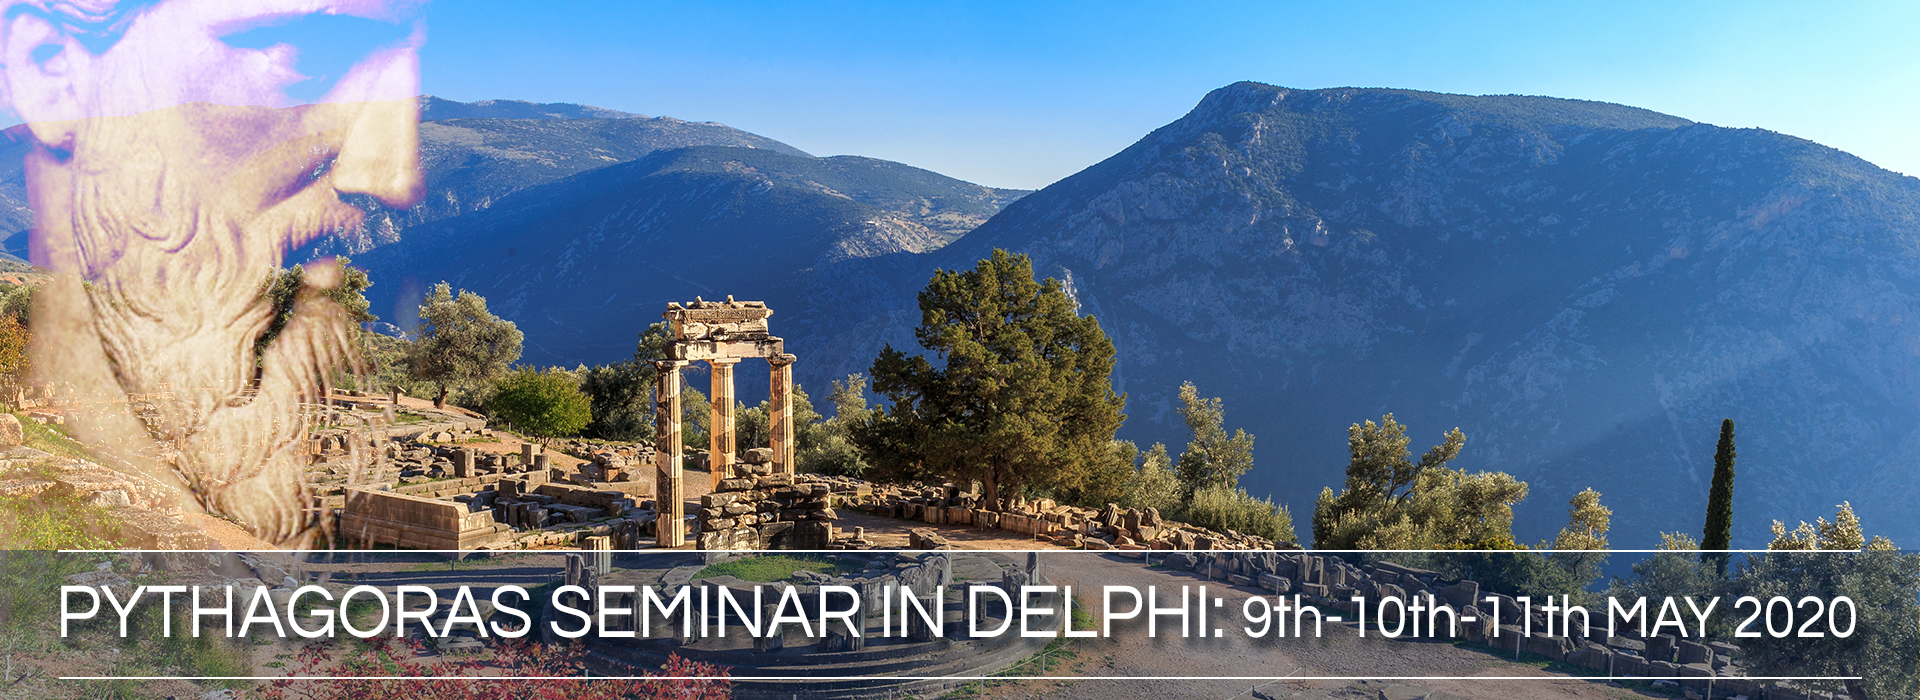 Pythagoras Seminar in Delphi